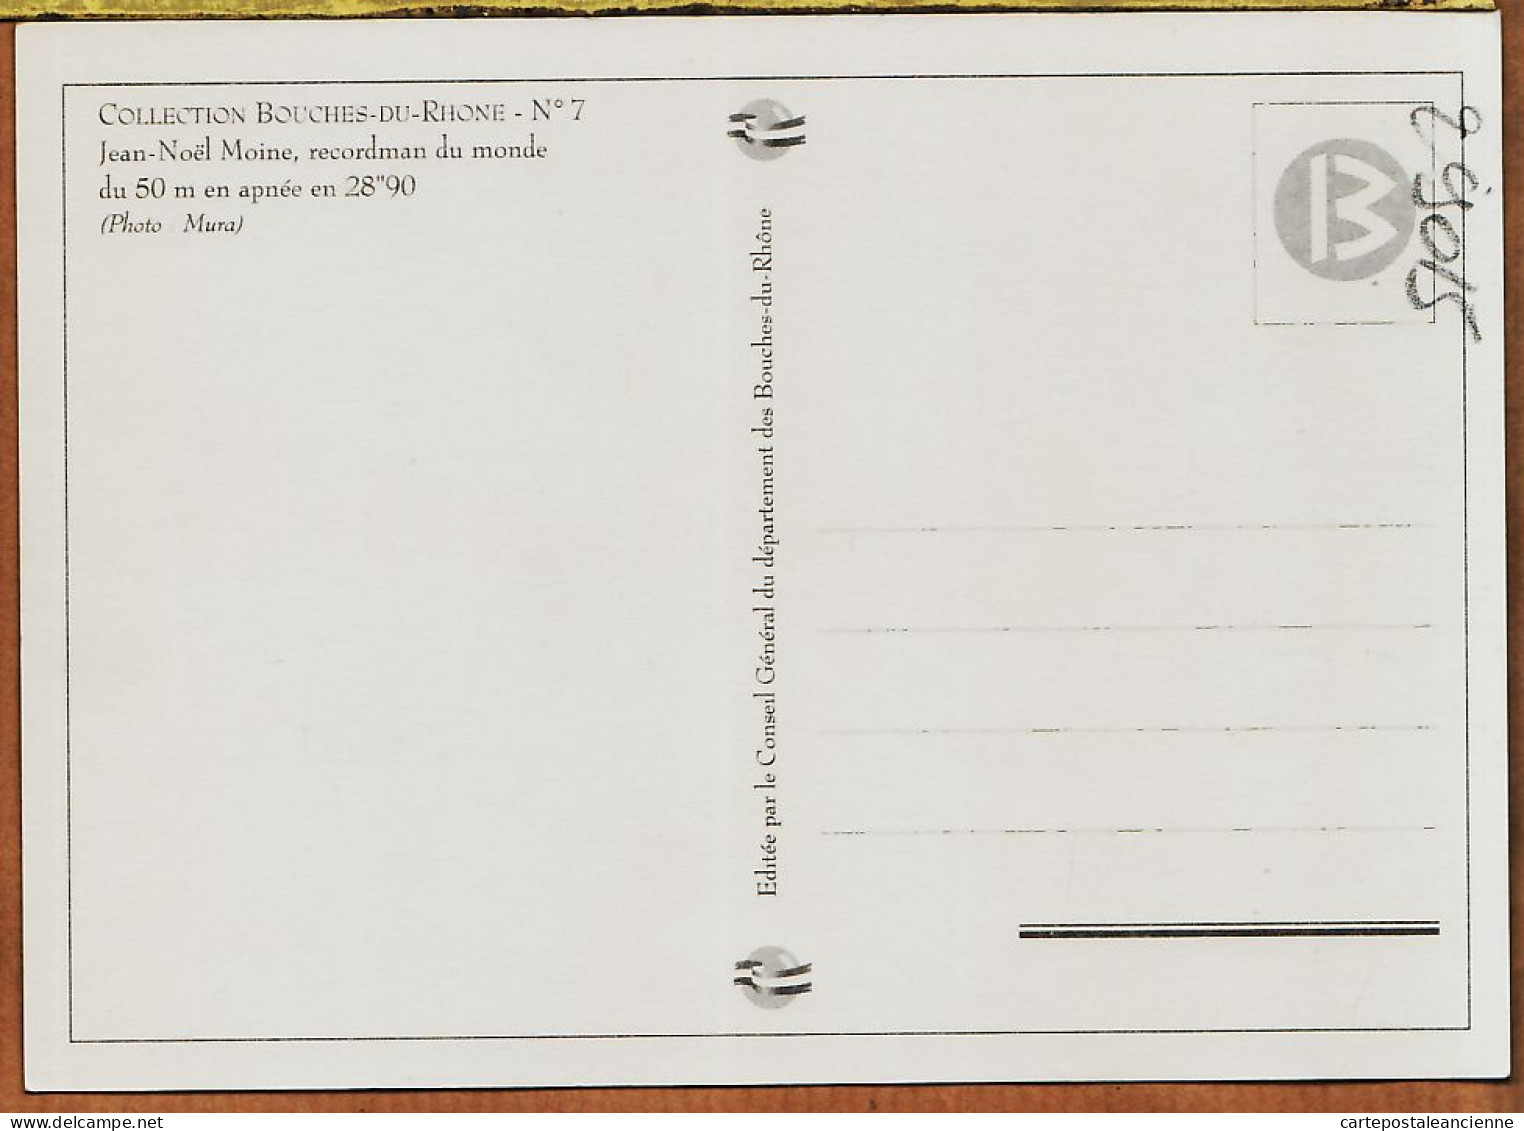 04811 / MARSEILLE Jean-Noël MOINE Recordman Du Monde 50 M Apnée 28"90 Photo MURA Collection BOUCHES Du RHONE N°7 - Zwemmen